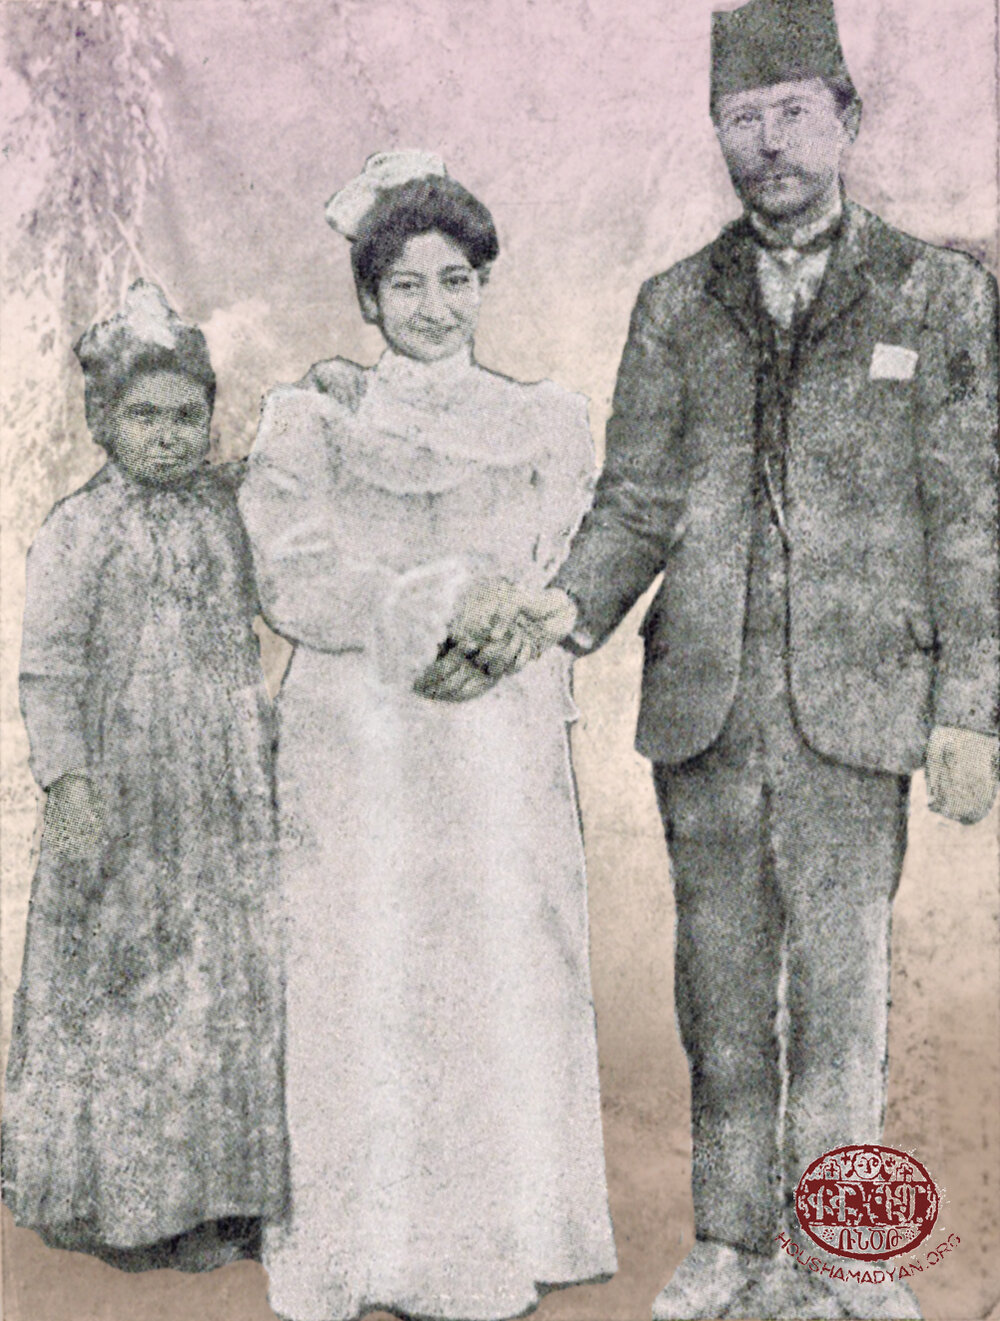 Ամուսնական պատկեր, 1908. Միսաք Քէլէշեան եւ Սրբուհի Քէլէշեան (ծն. Պարիտեան)